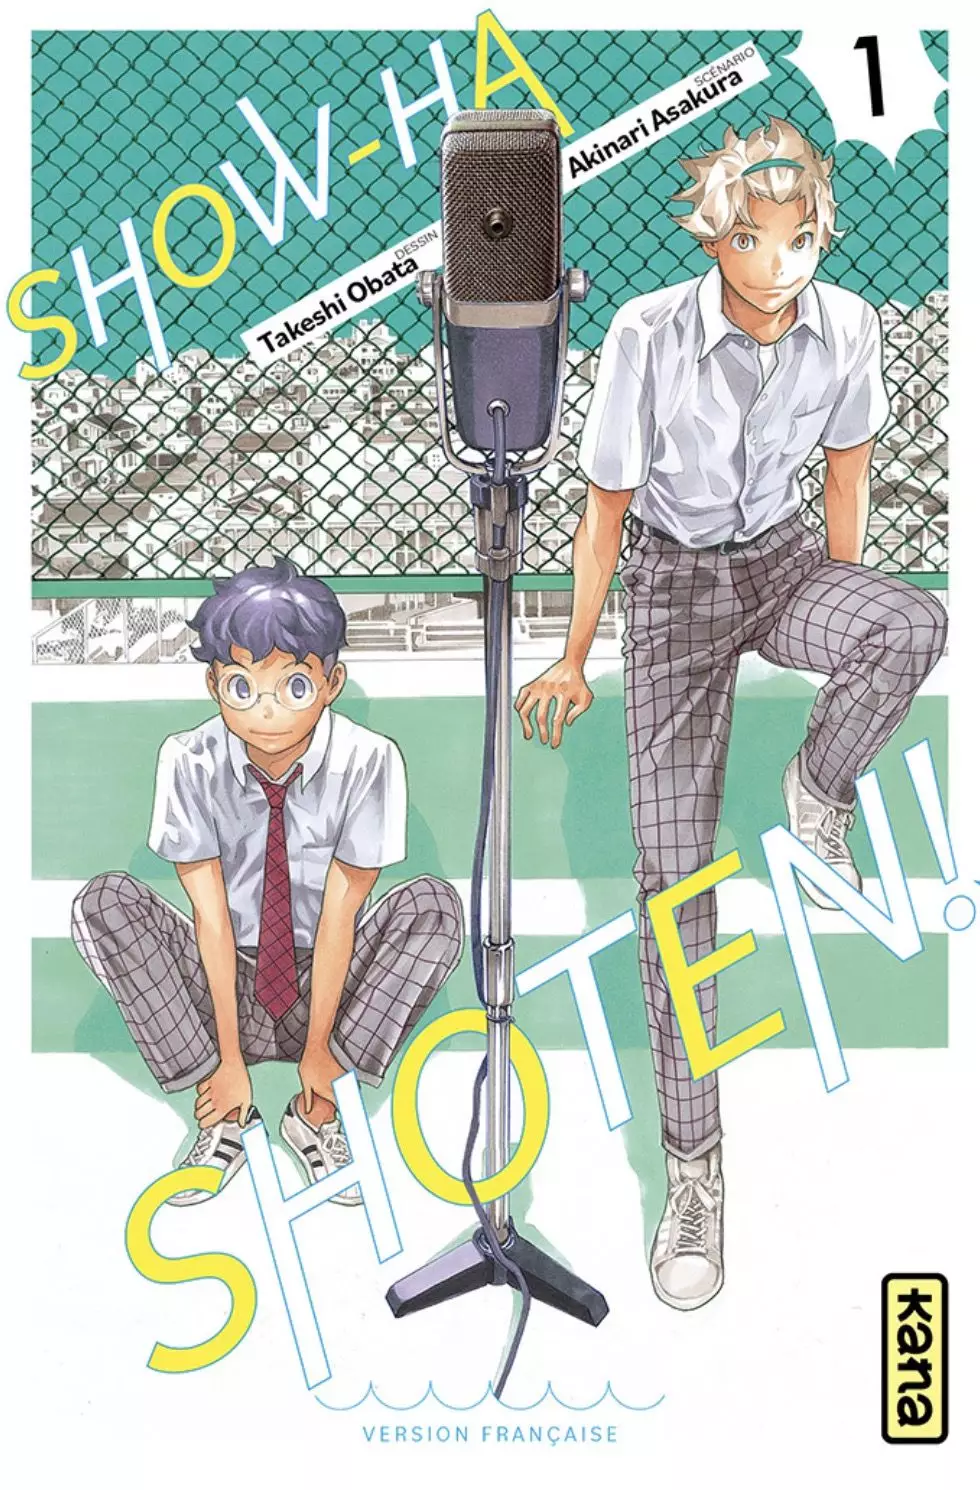 Show-ha Shoten - Manga série - Manga news